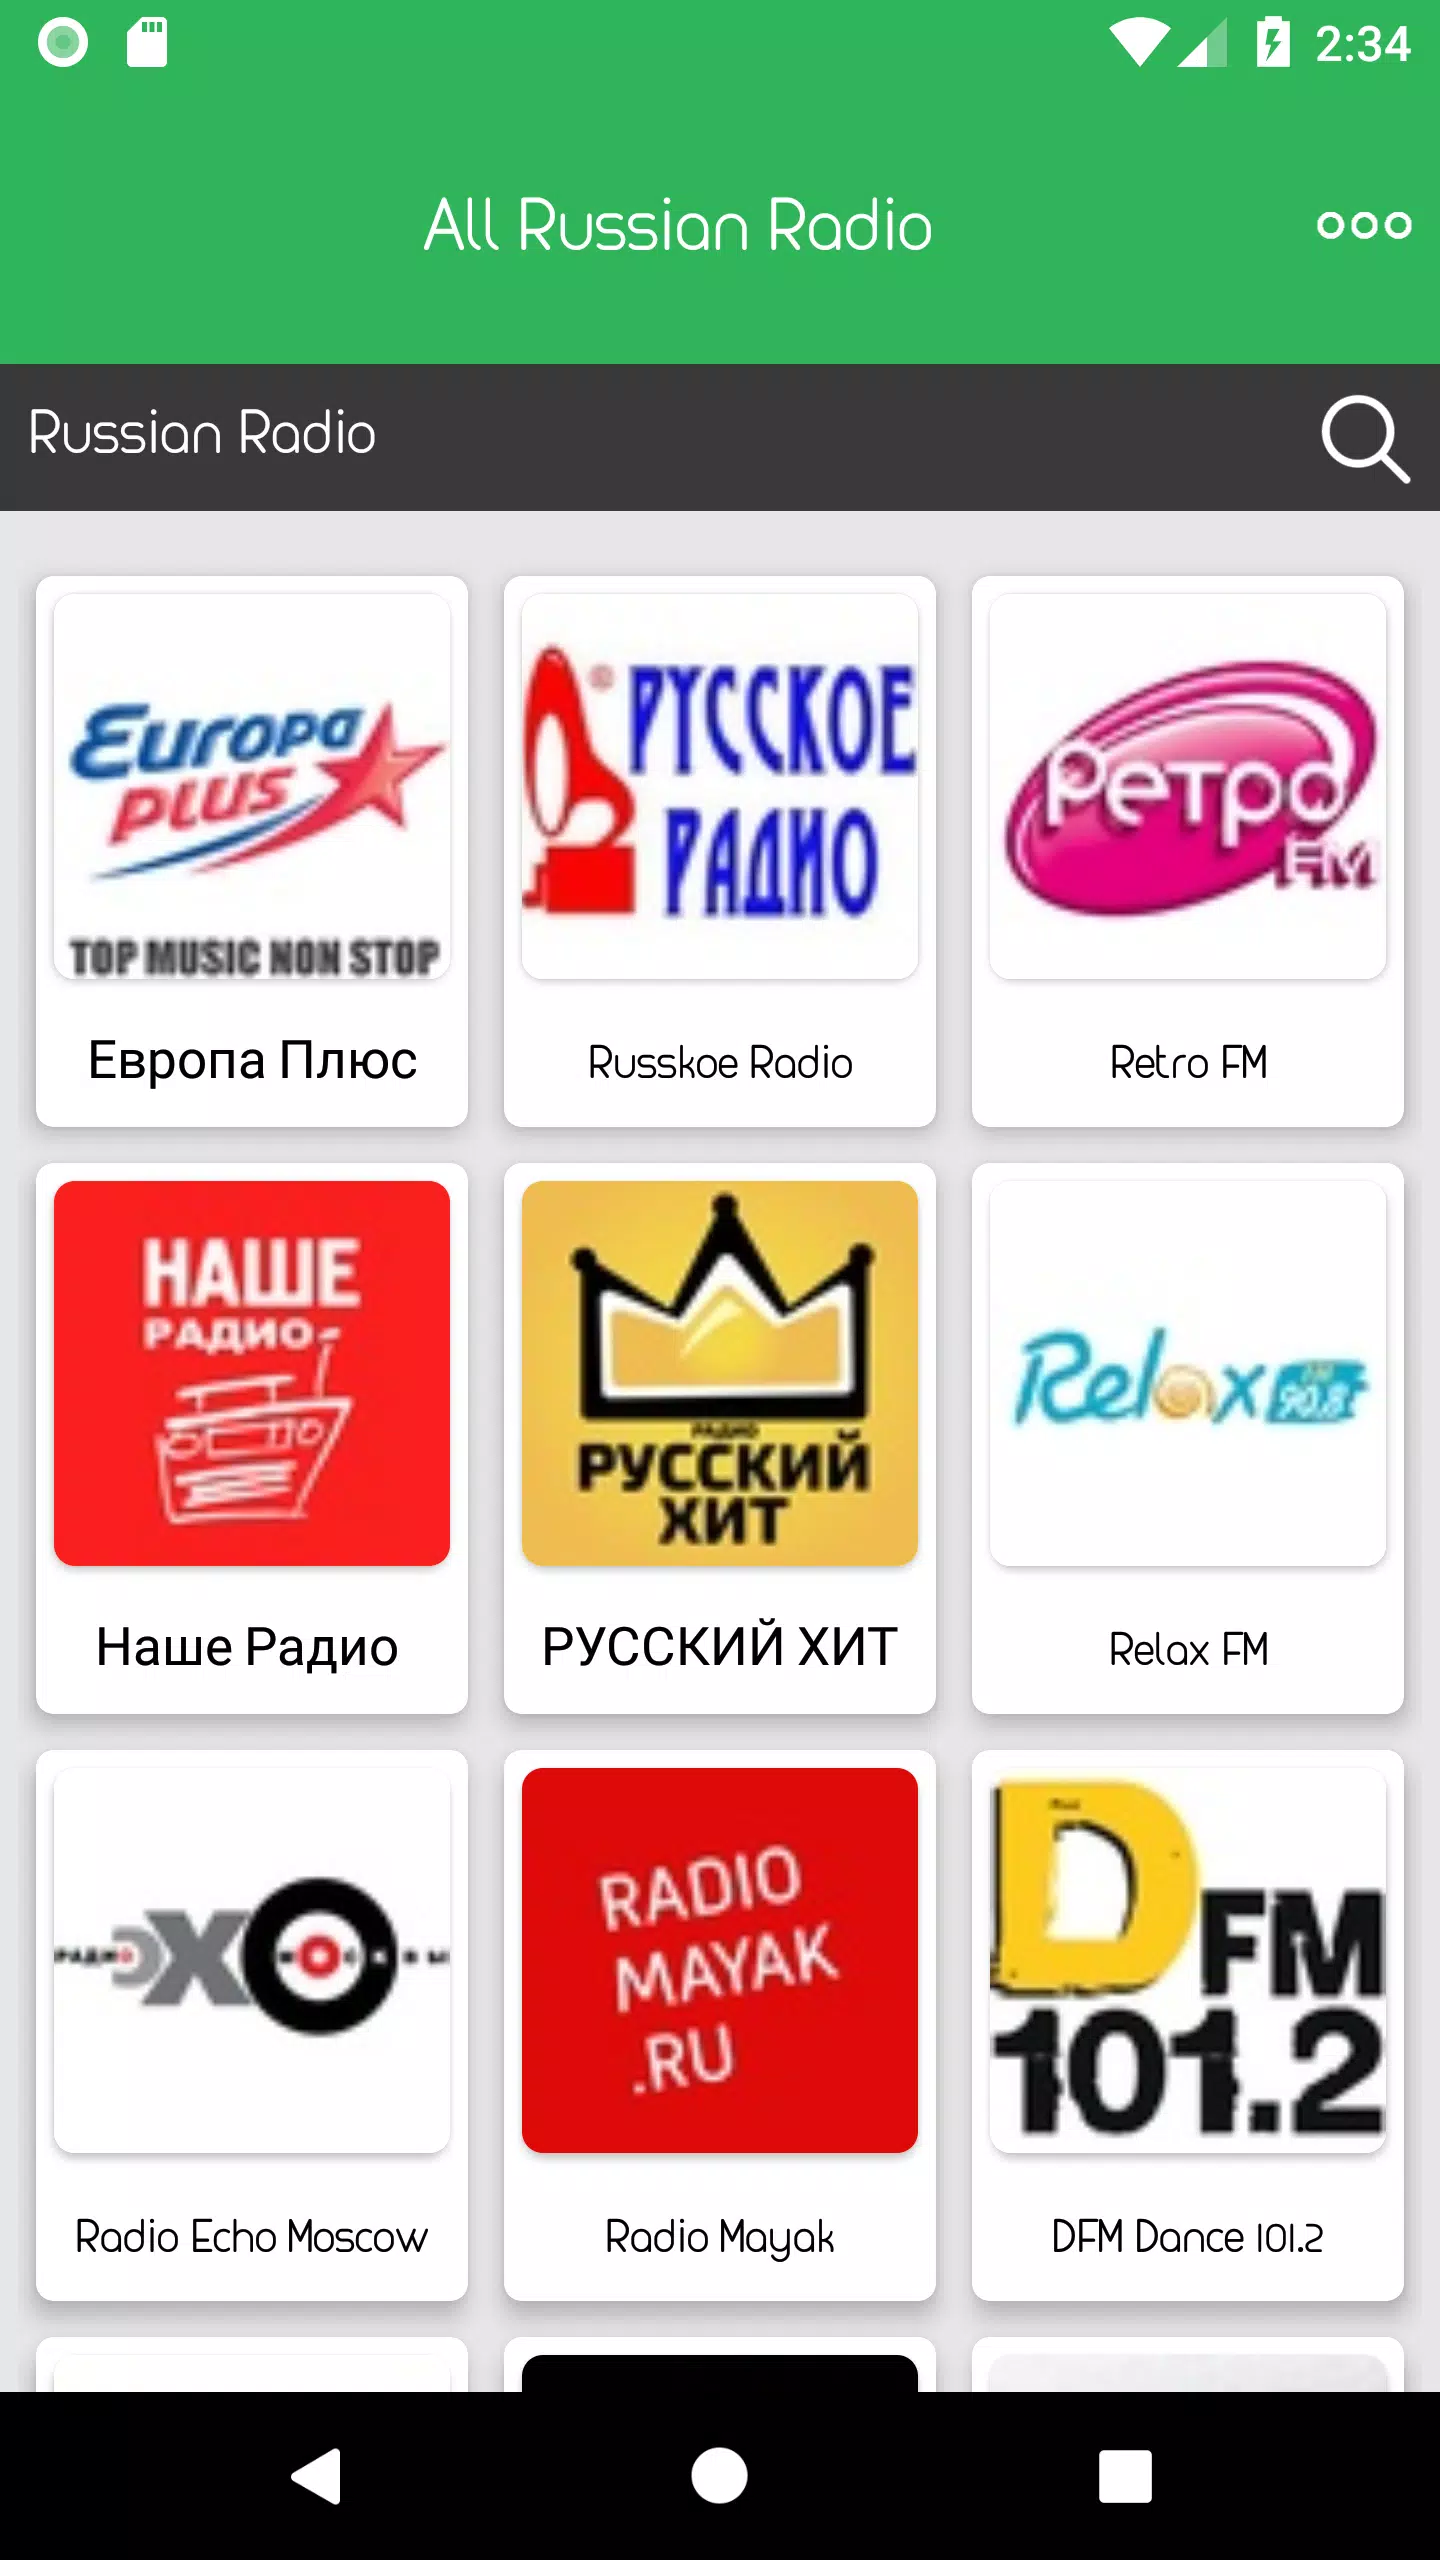 Рашен фм радио. Радио хит. Радиостанции России. Радио fm. Российское радио.